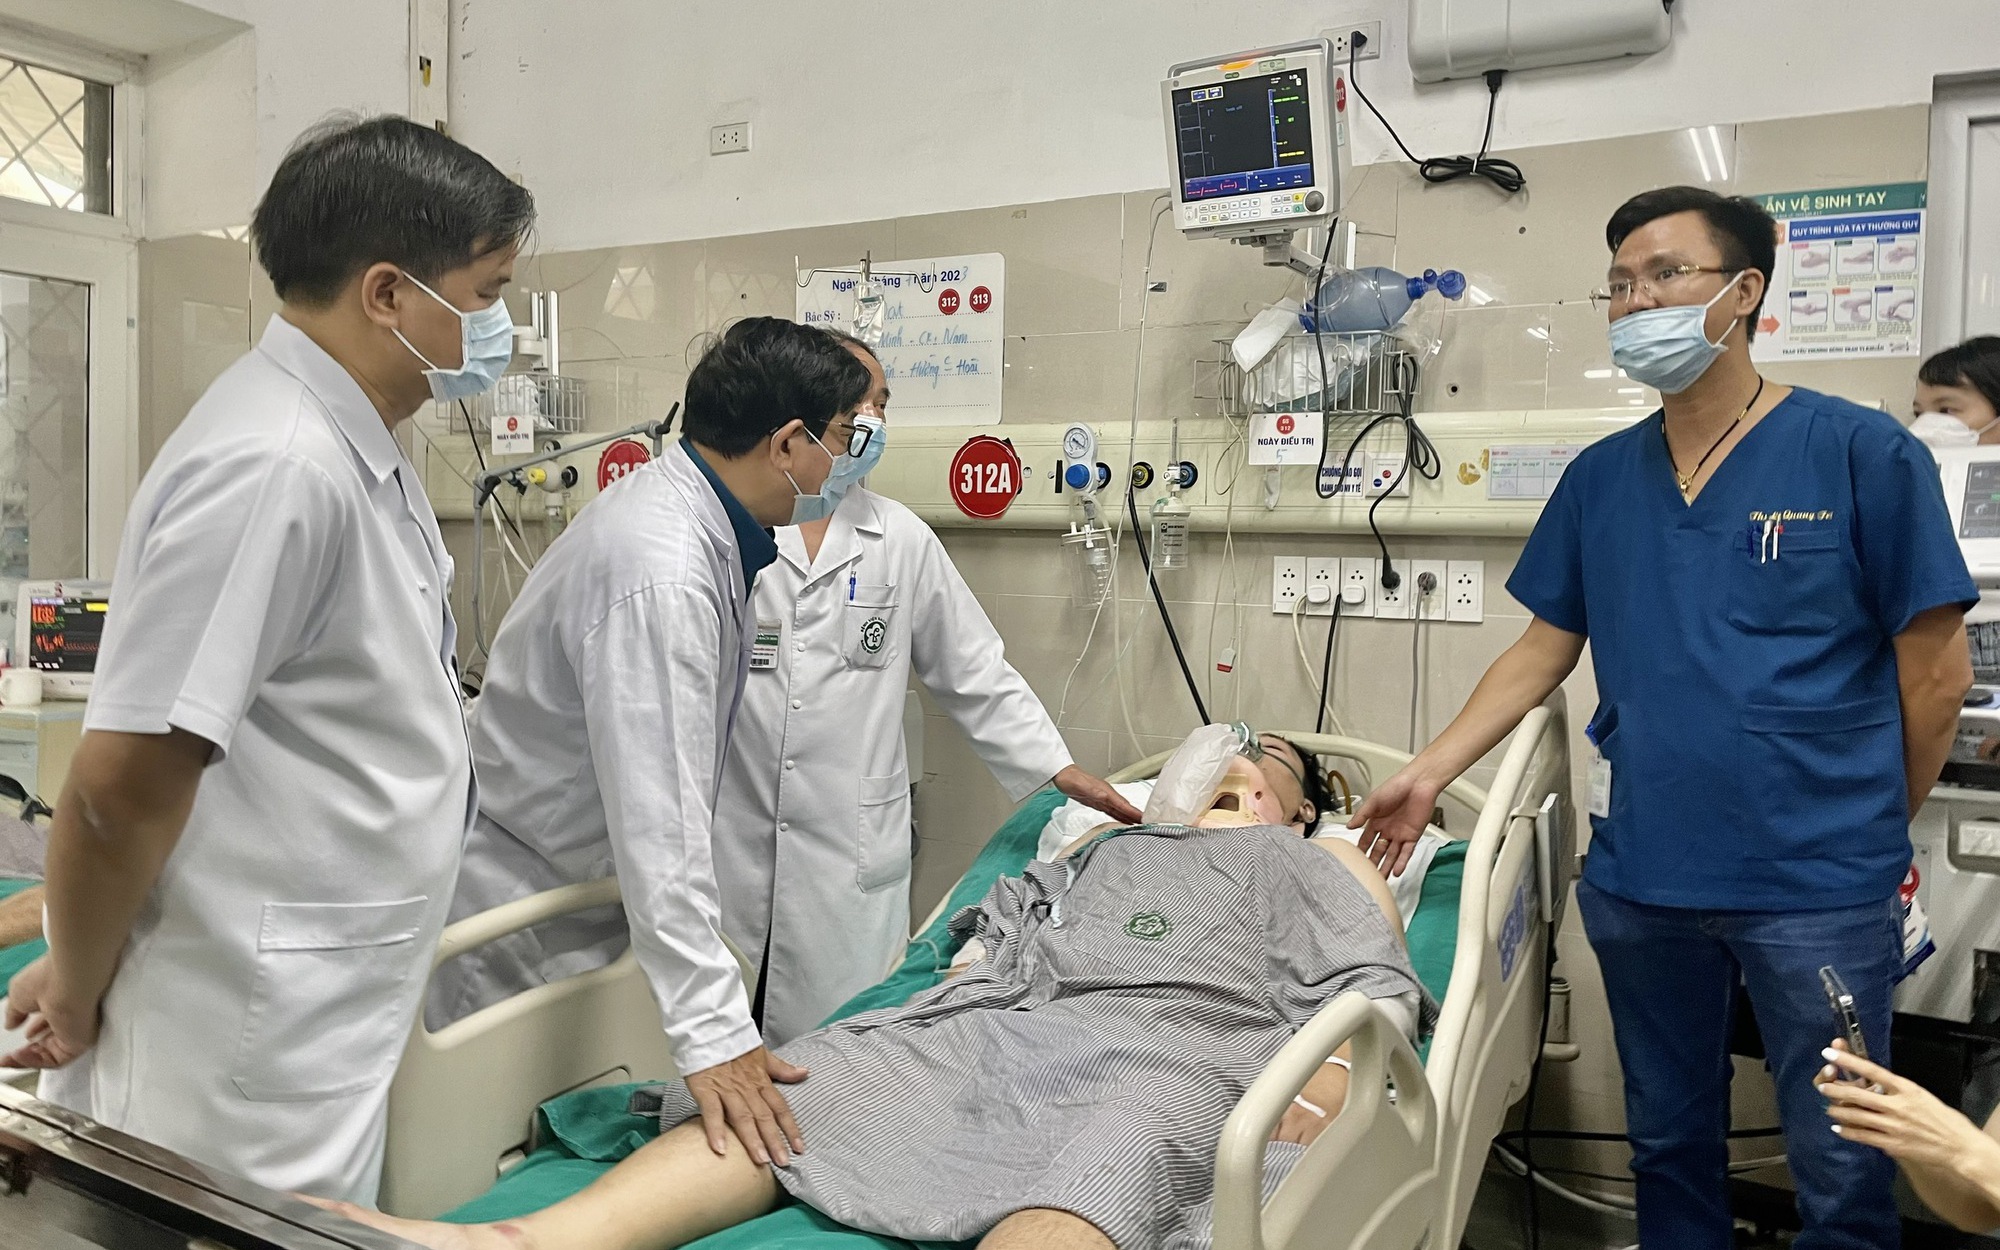 Vụ cháy chung cư mini: Còn 4 bệnh nhân trong tình trạng nặng, một ca chuyển đến Bệnh viện Việt Đức